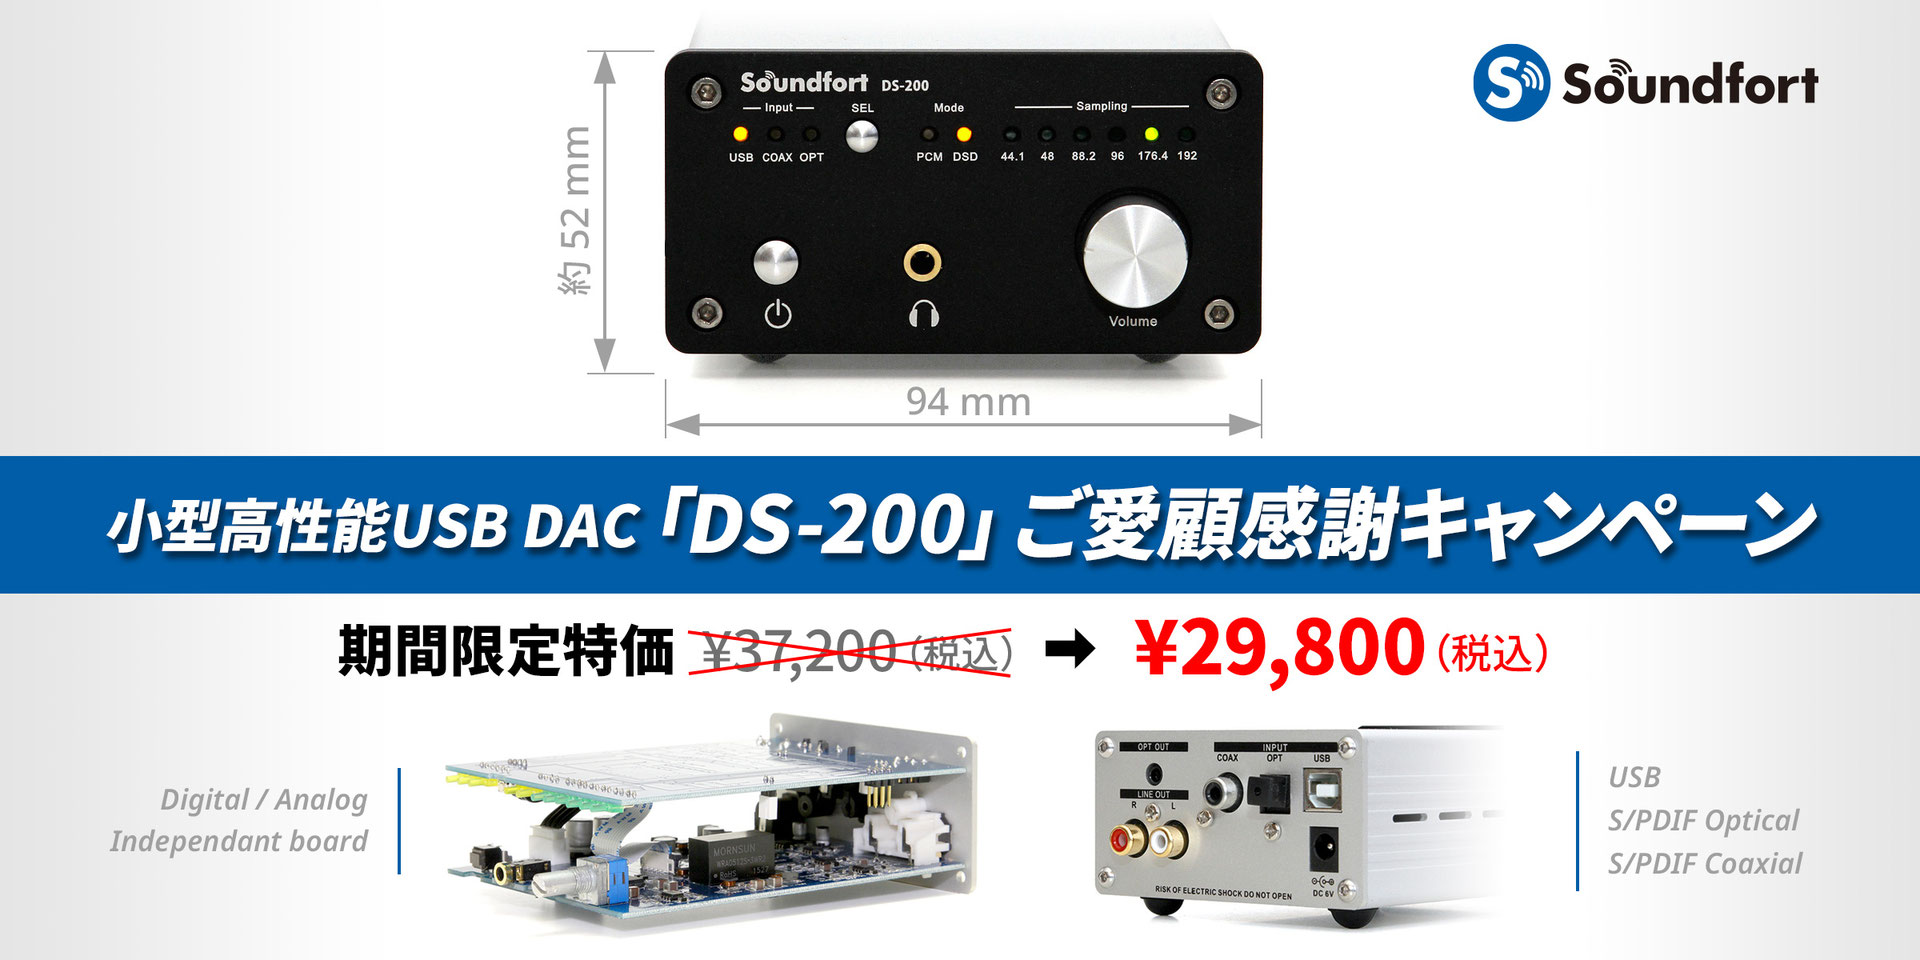 DS-200 ご愛顧感謝キャンペーン - Soundfort (サウンドフォート)